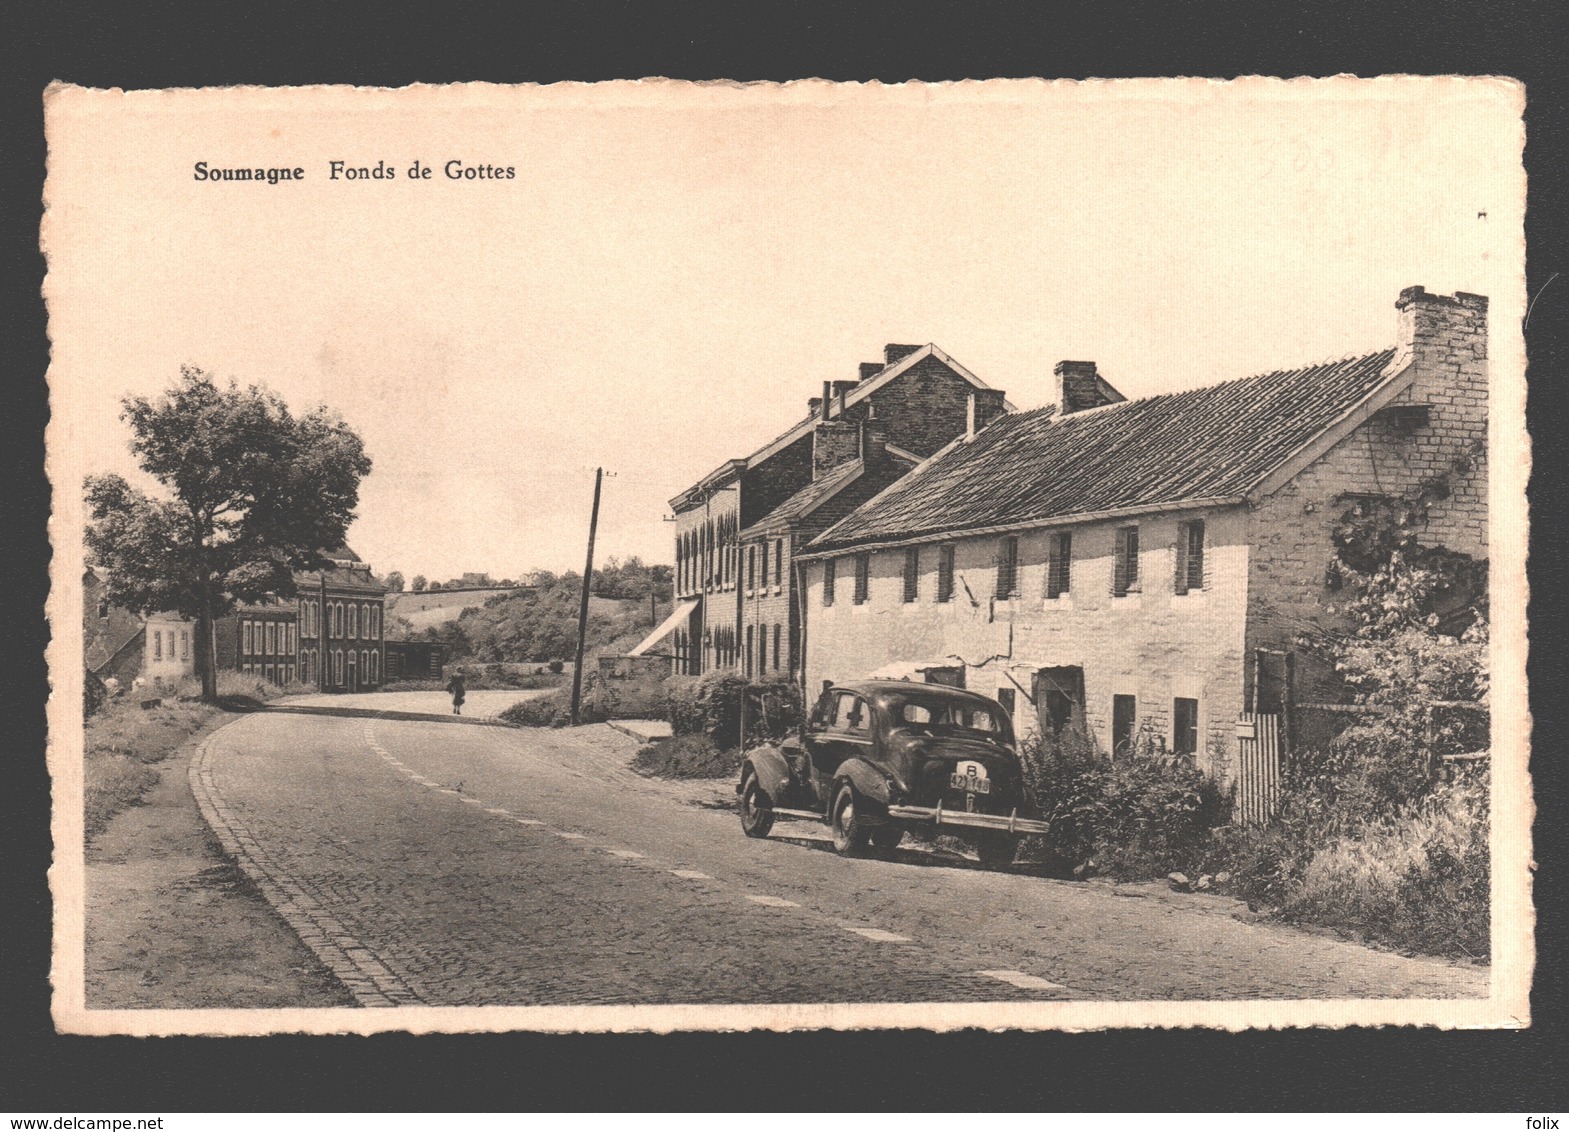 Soumagne - Fonds De Gottes - éd. Safimi - Micheroux - Oldtimer Car / Voiture - Soumagne